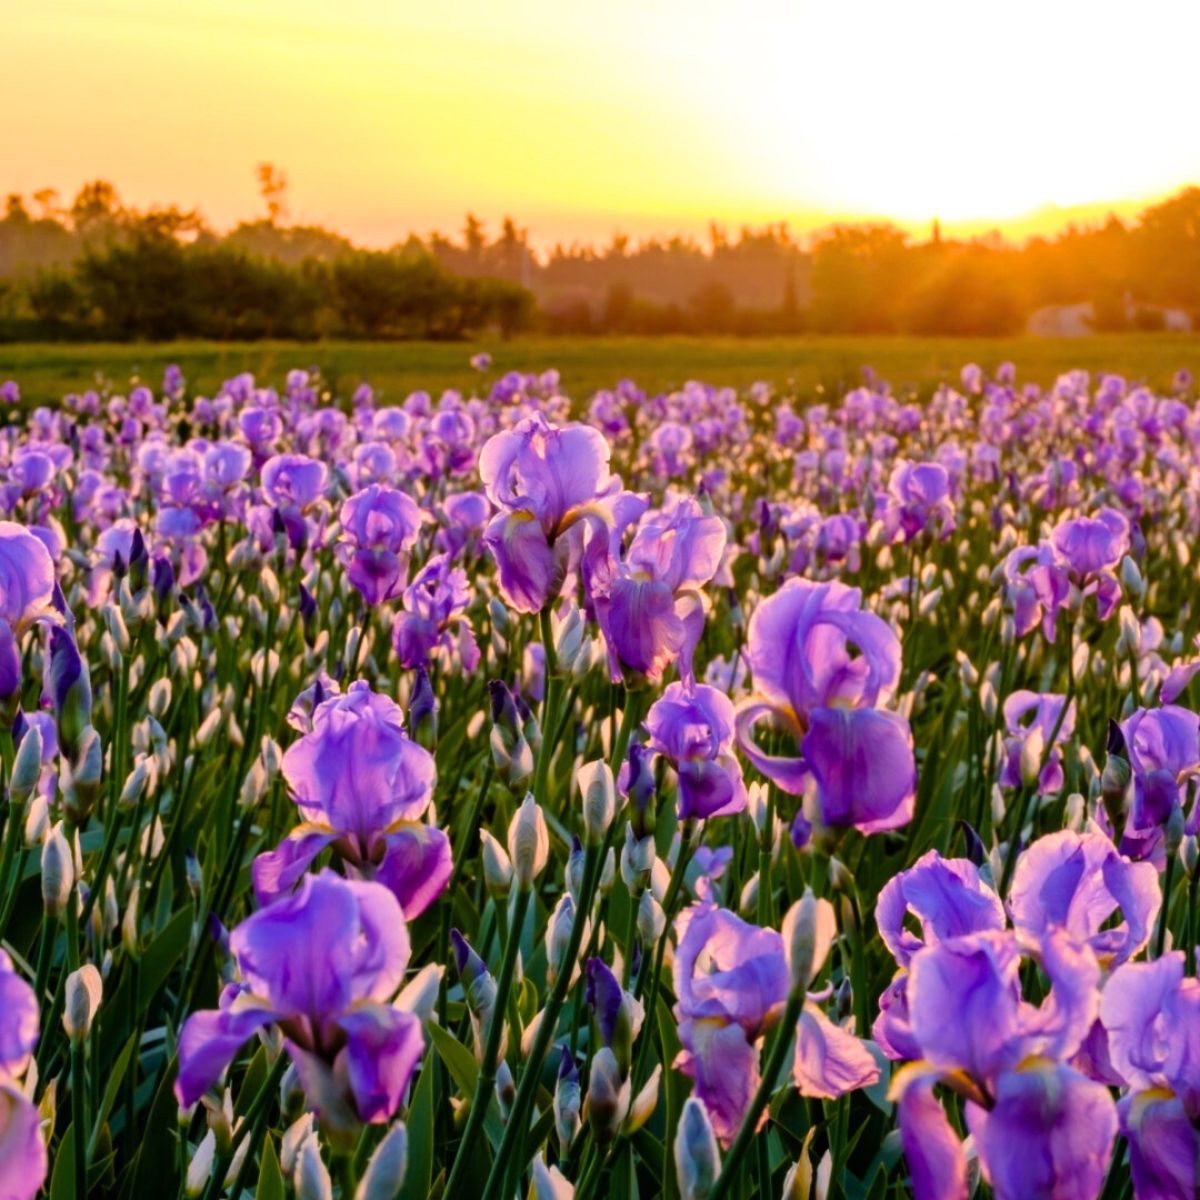 A field of Iris flowers